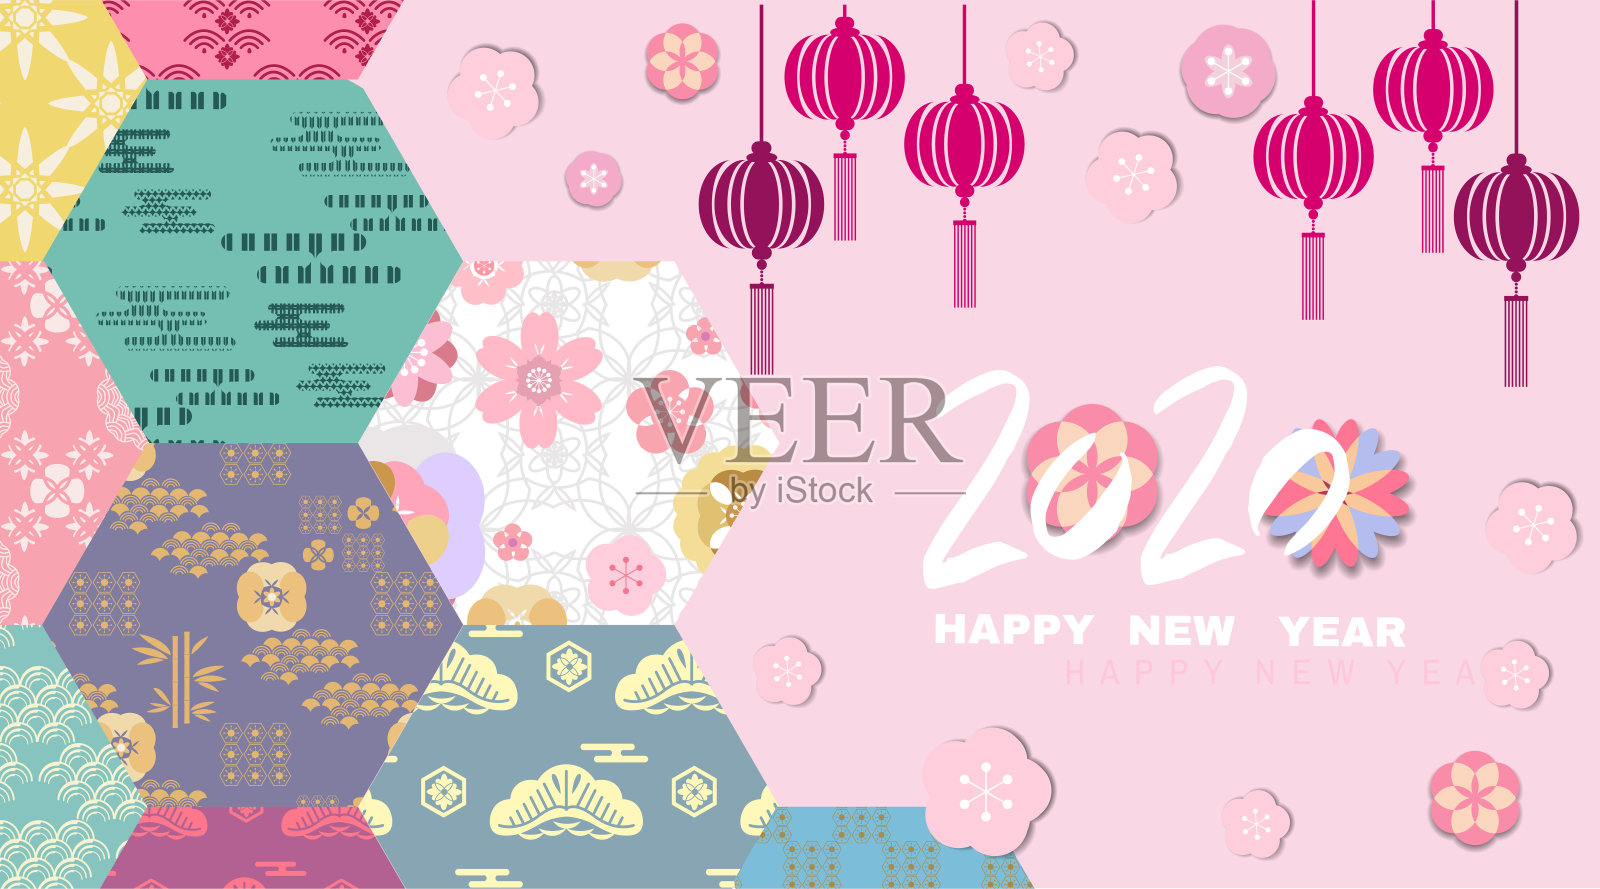 祝中国2020年鼠年新年快乐。插画图片素材